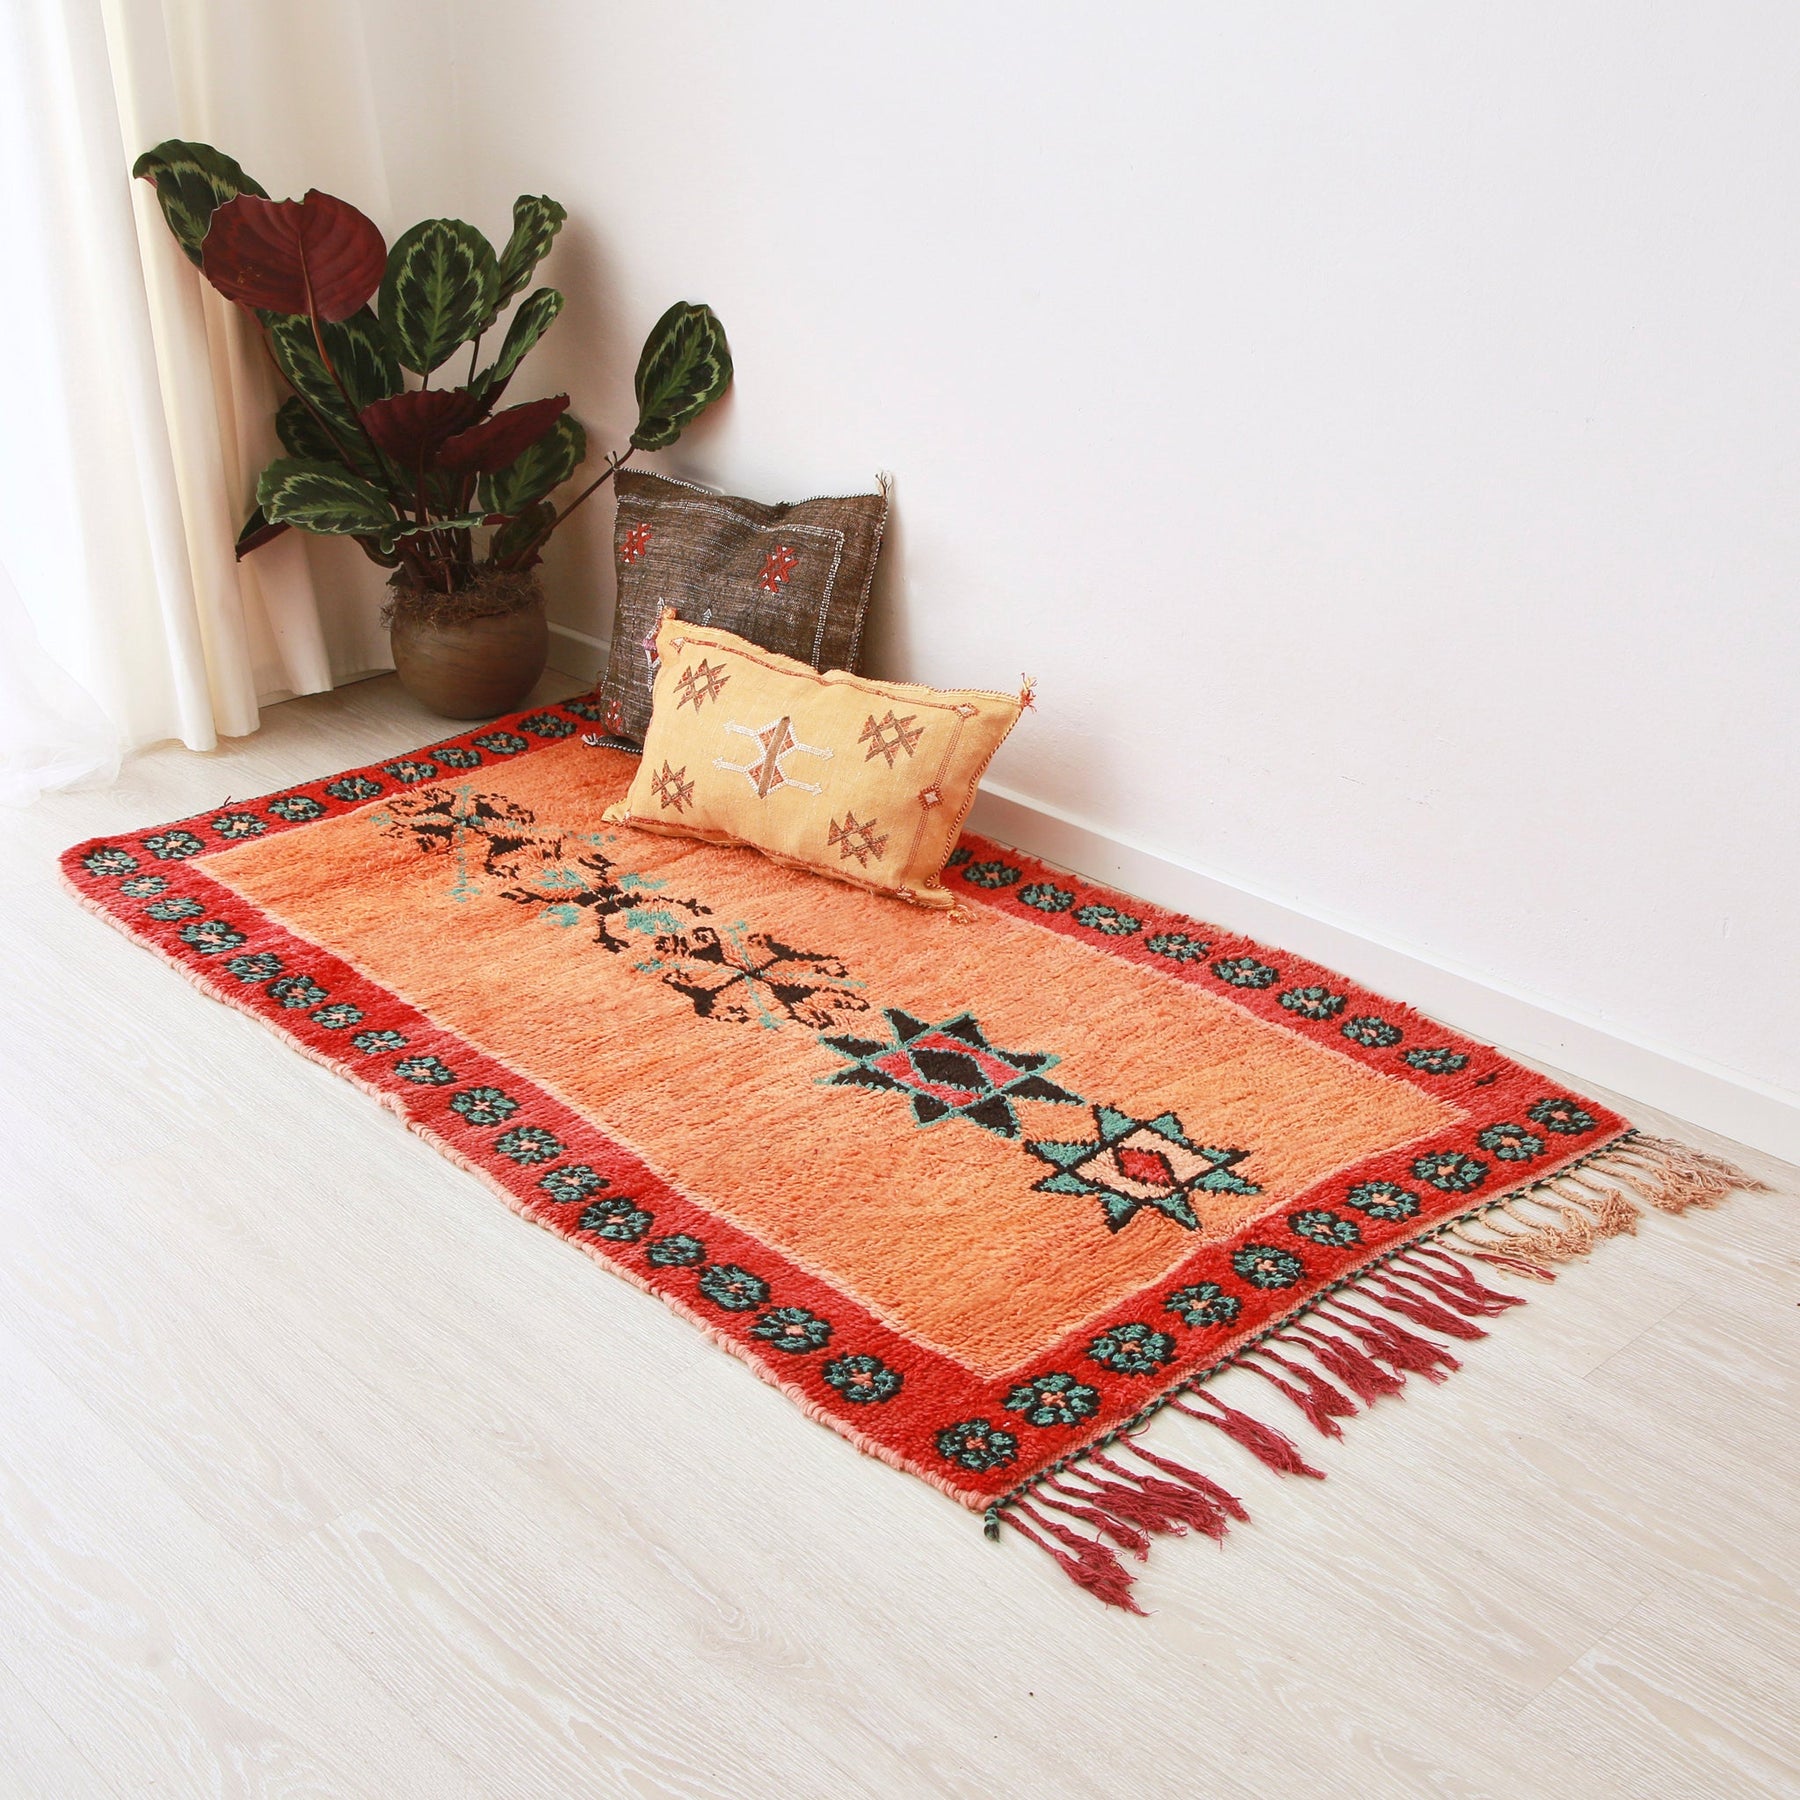 tappeto azilal vintage per corridoio con lana arancione, con cornice rossa e disegni centrali disteso sul pavimento. Sul tappeto c'è un tappeto giallo, uno marrone scuro e una pianta